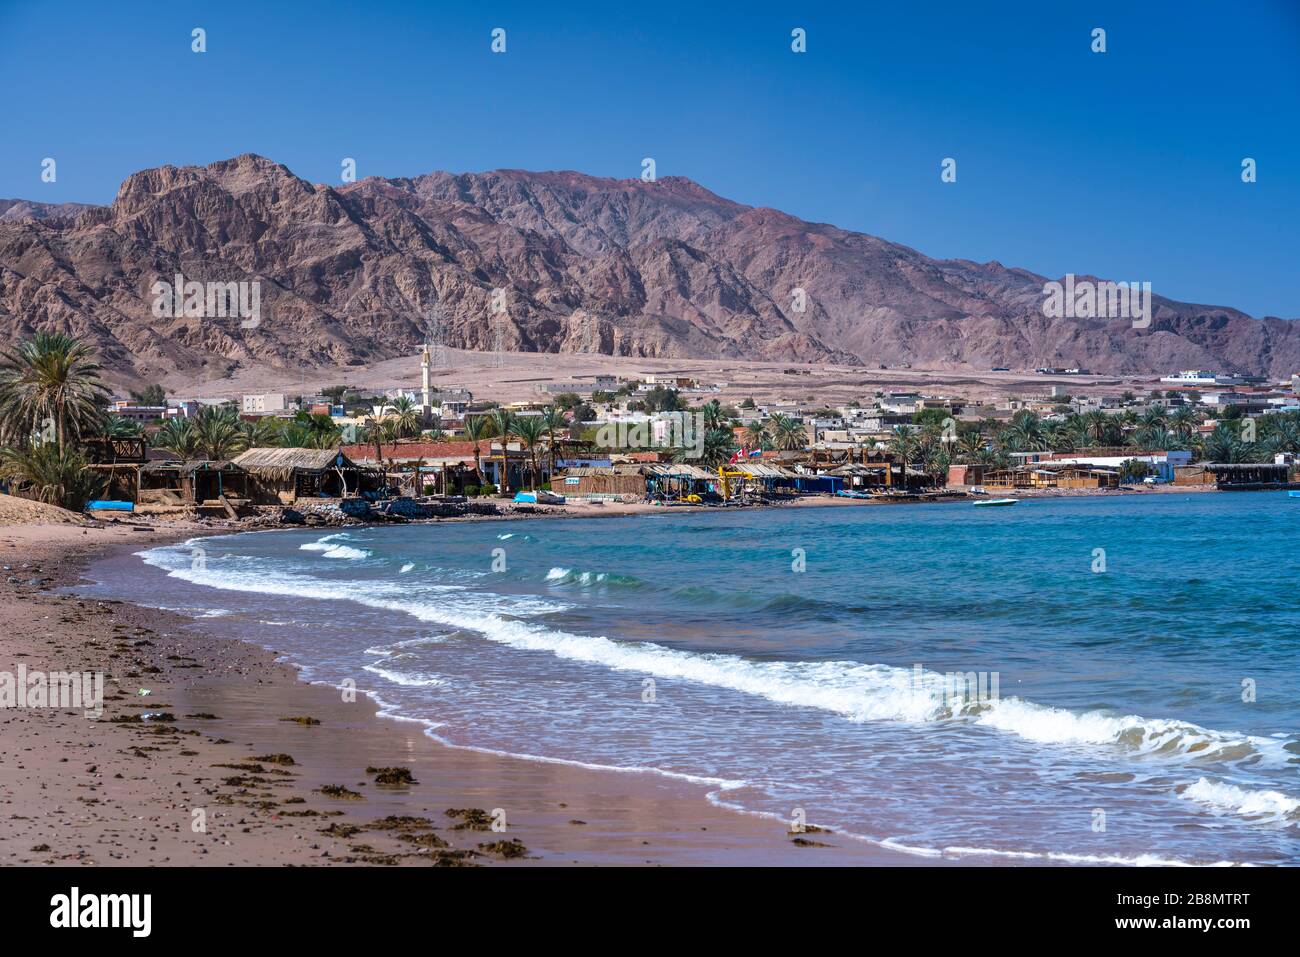 A sandy beach near Nuweiba, Sinai, Egypt. Stock Photo